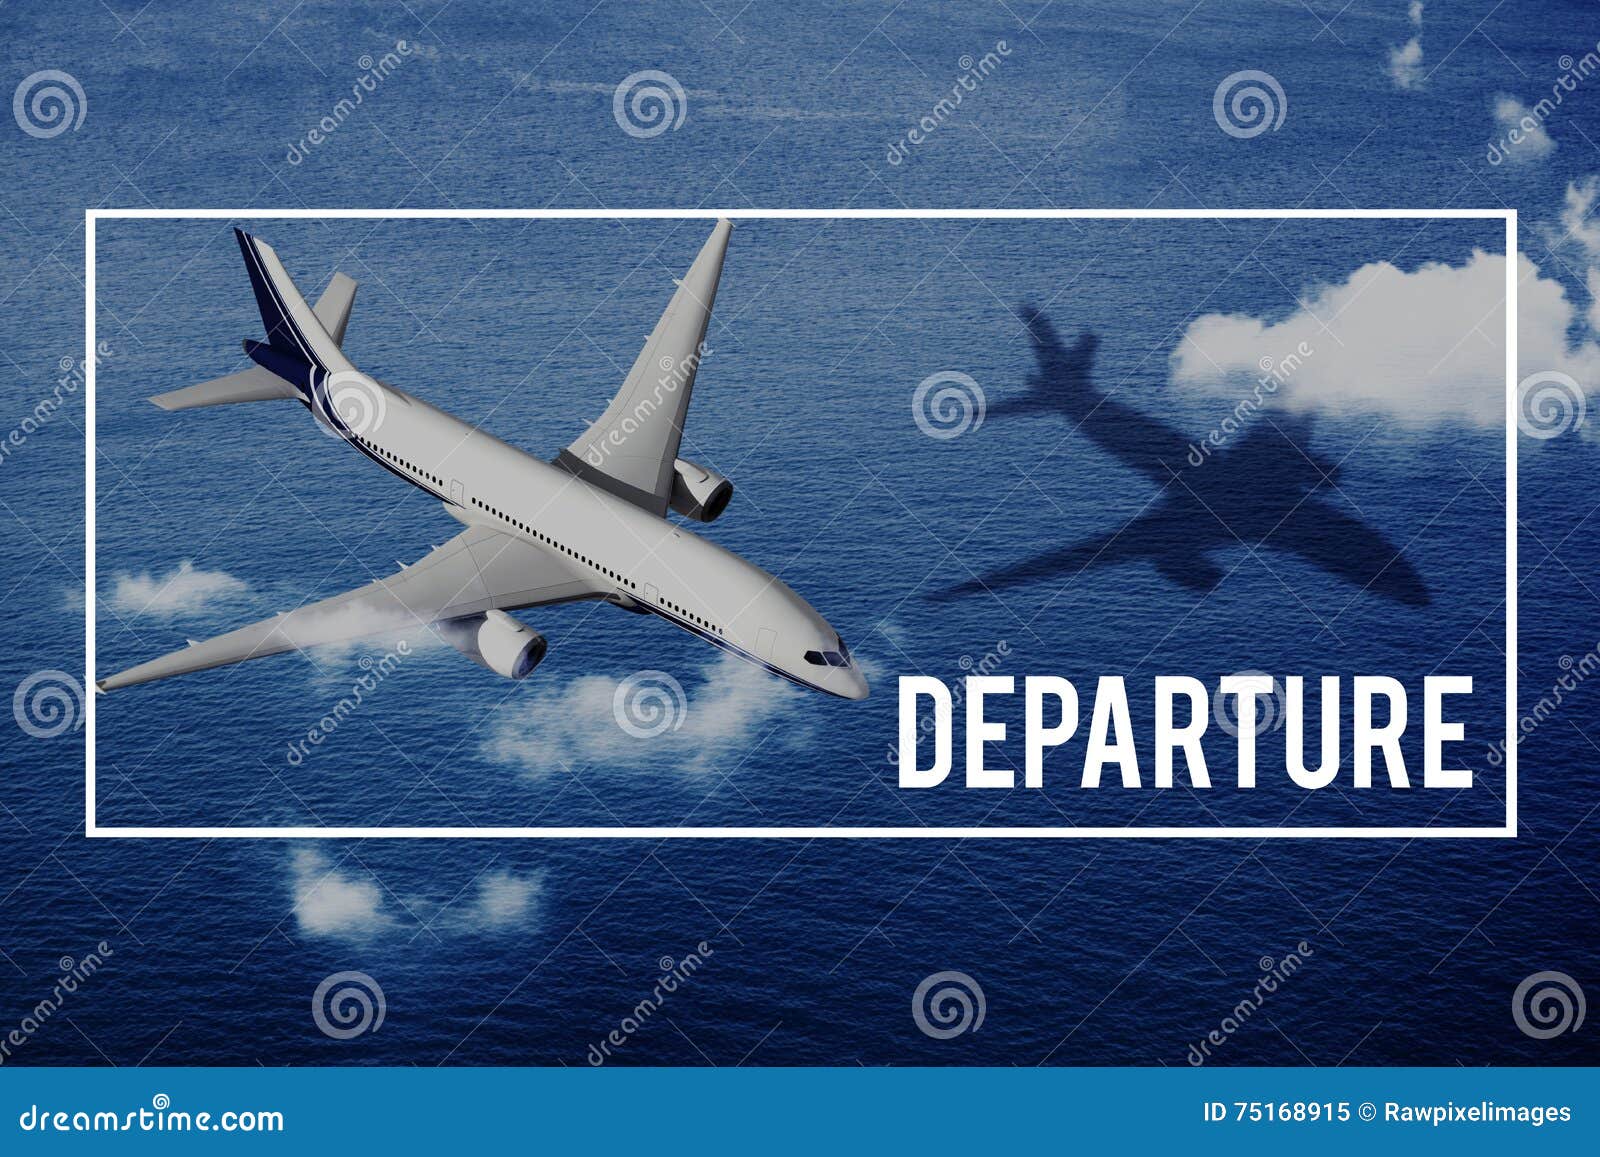 departure airport destination depart deviation concept